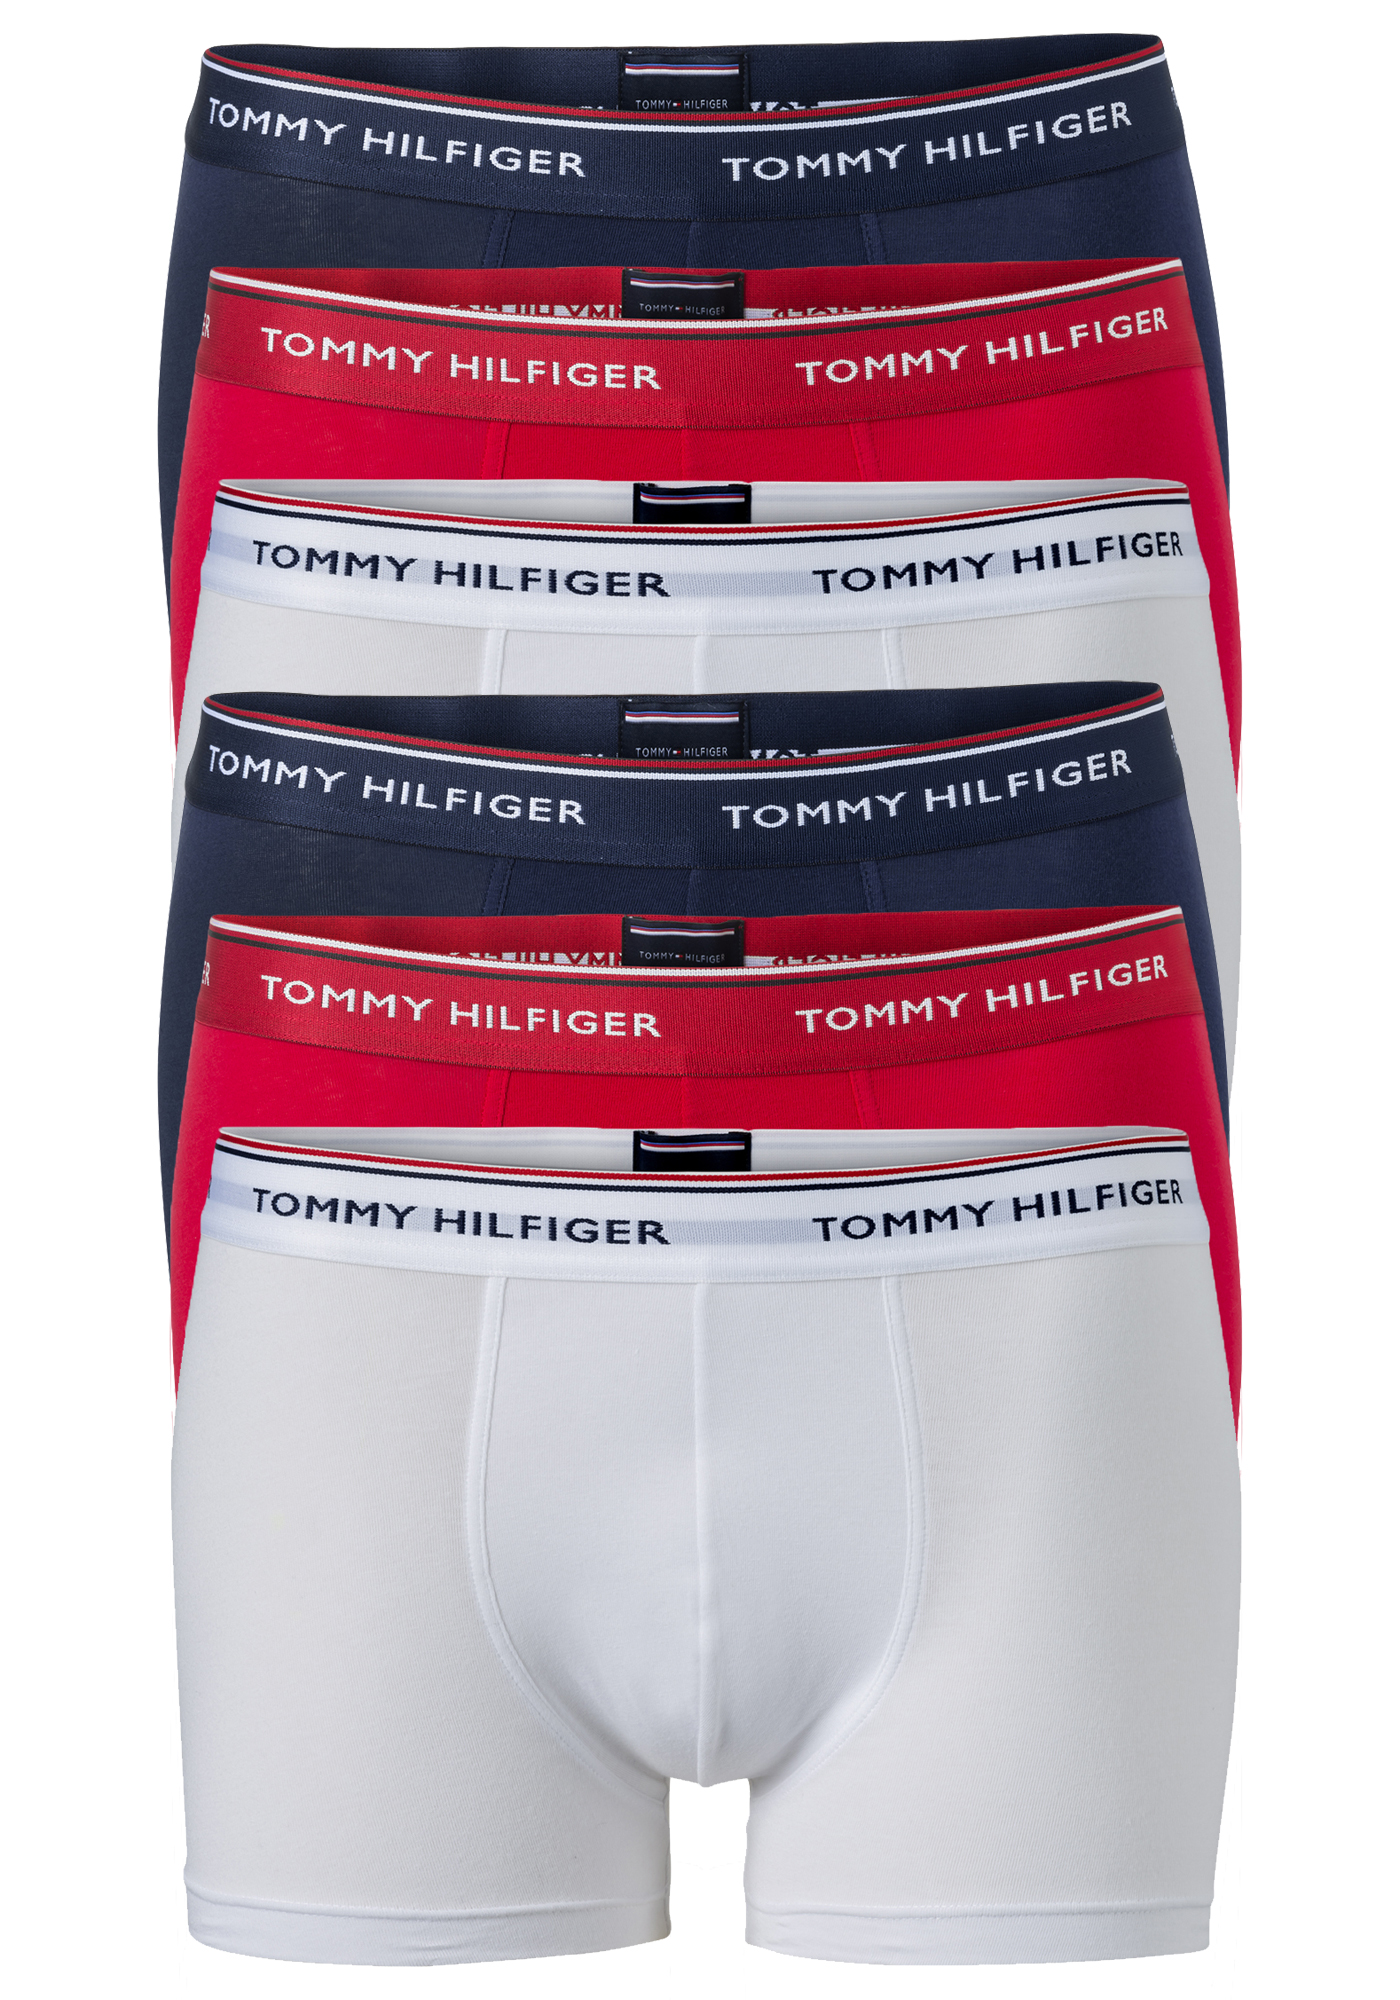 ga zo door voorjaar registreren Tommy Hilfiger trunks (2x 3-pack), heren boxers normale lengte, rood,... -  Shop de nieuwste voorjaarsmode